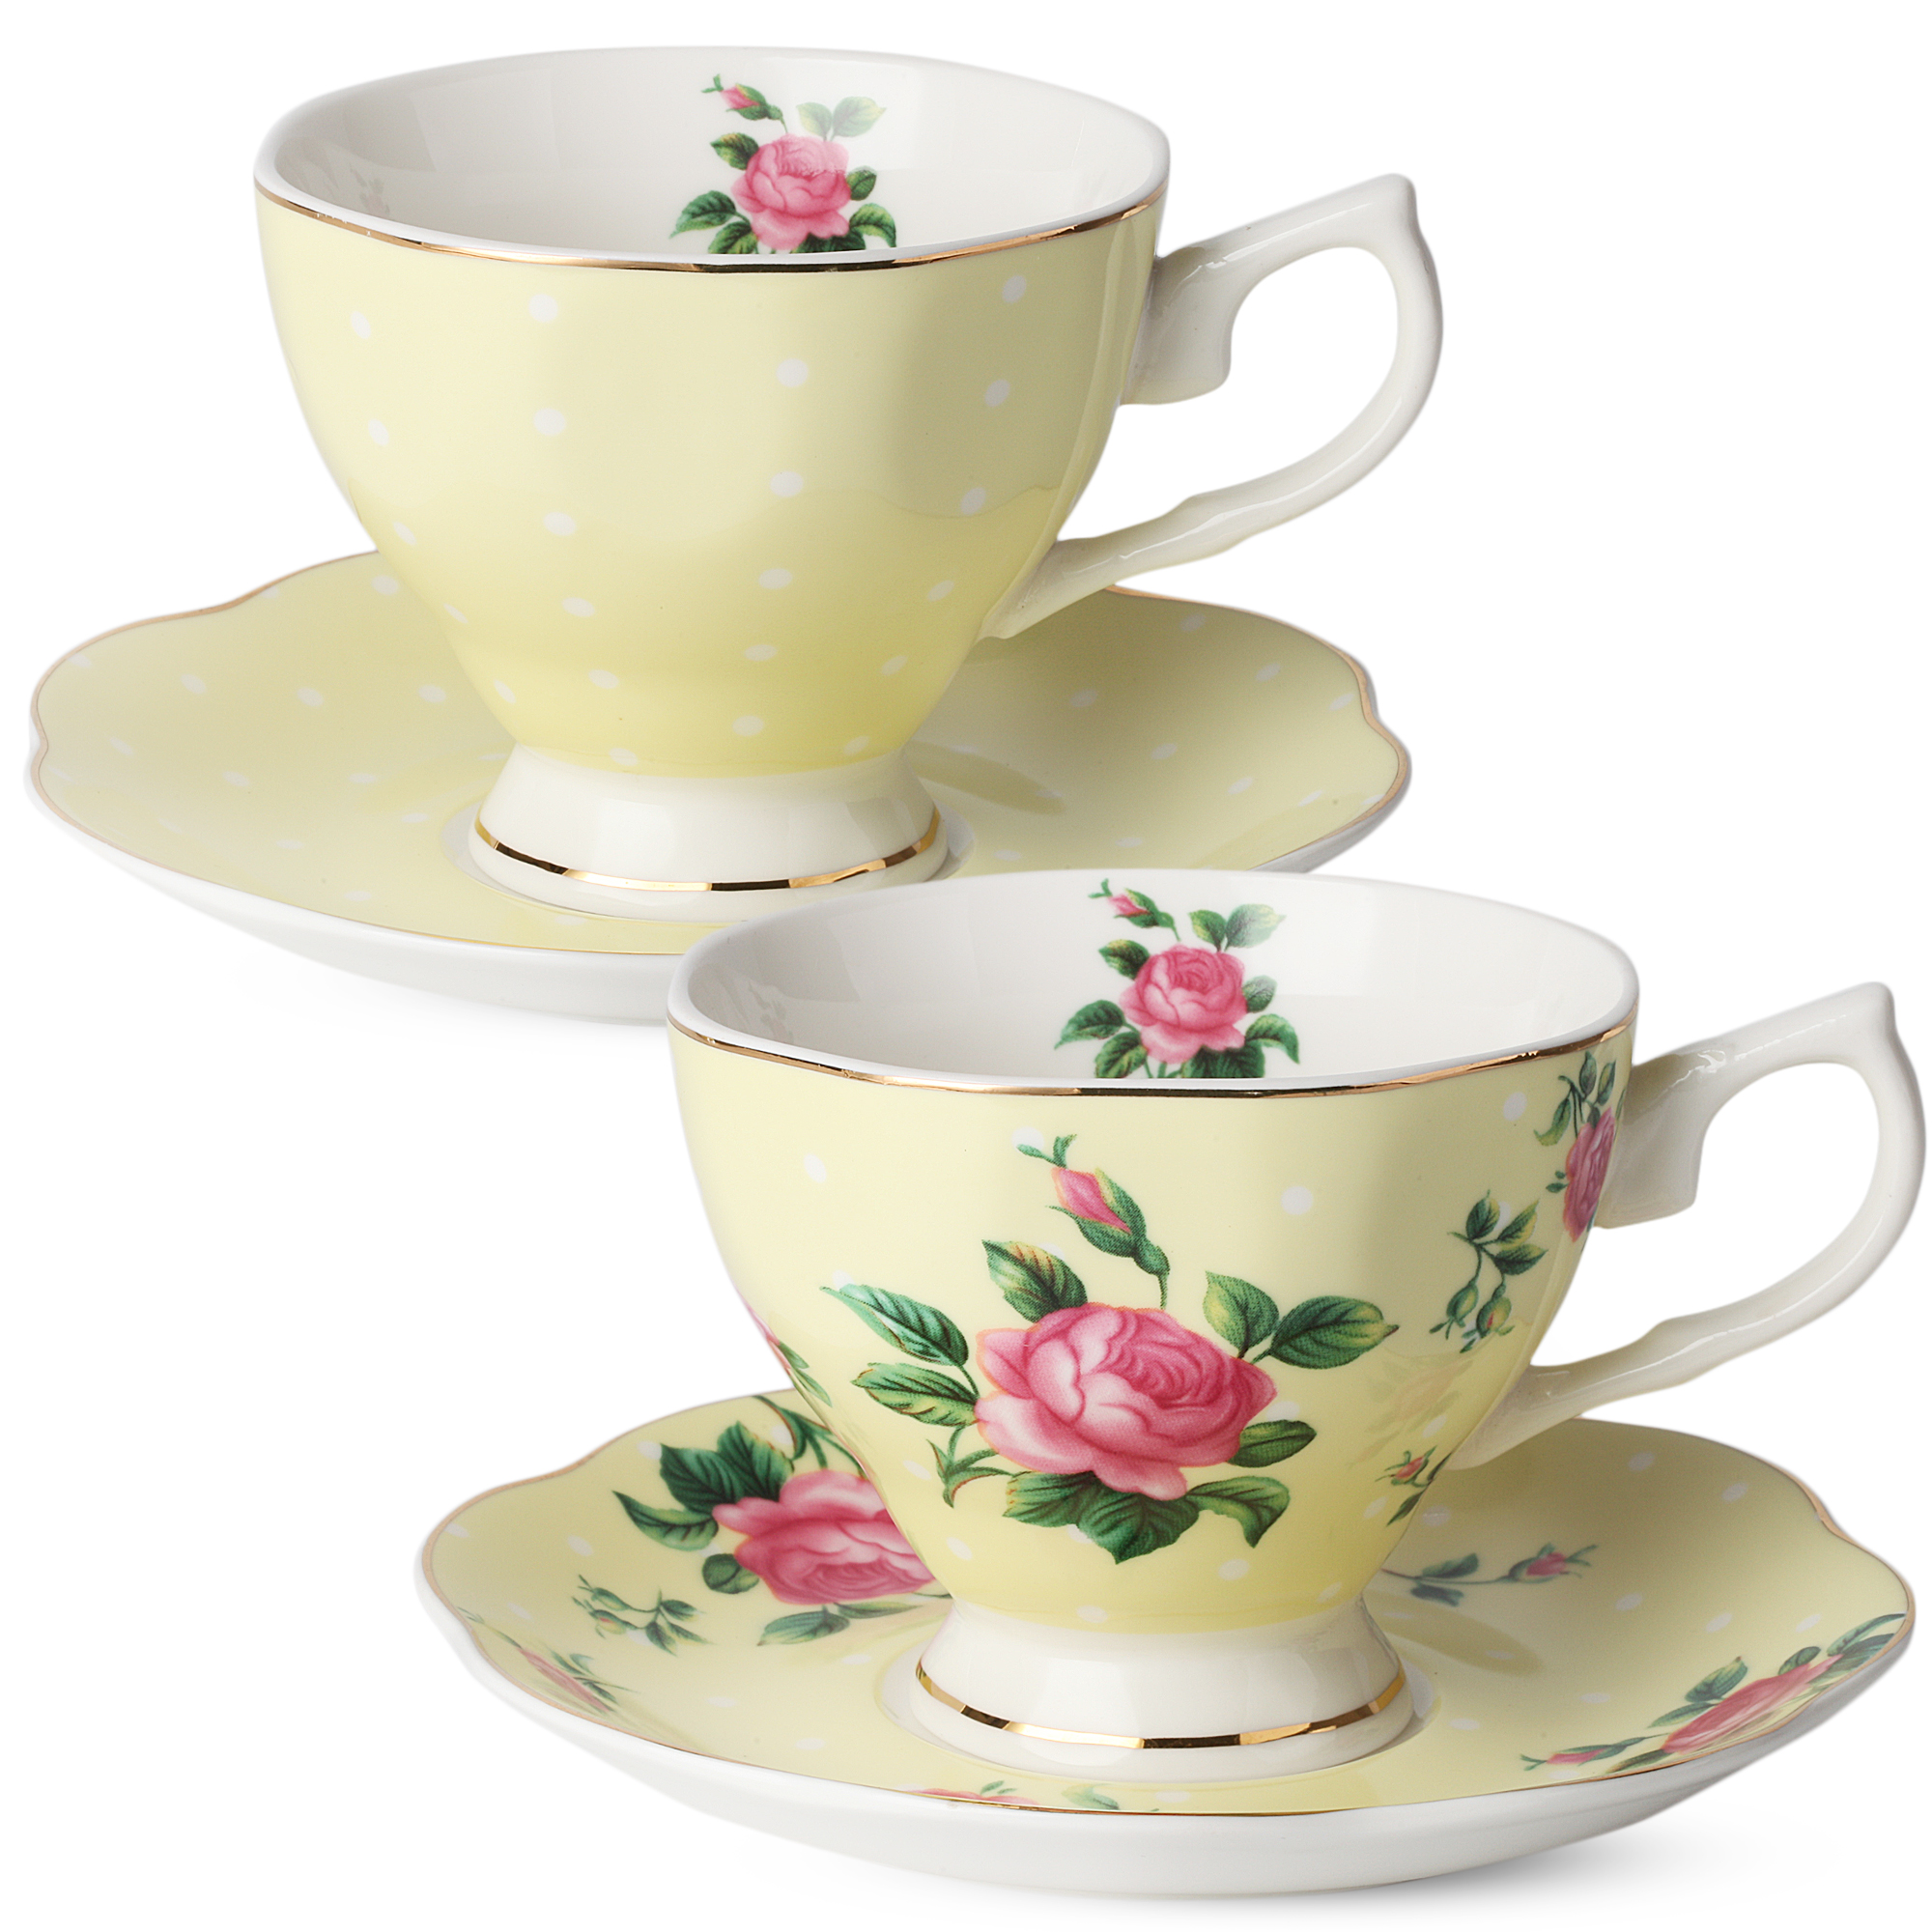 BTäT- Tea Cups, Tea Cups and Saucers Set of 6, Tea Set, Floral Tea Cups (8oz)